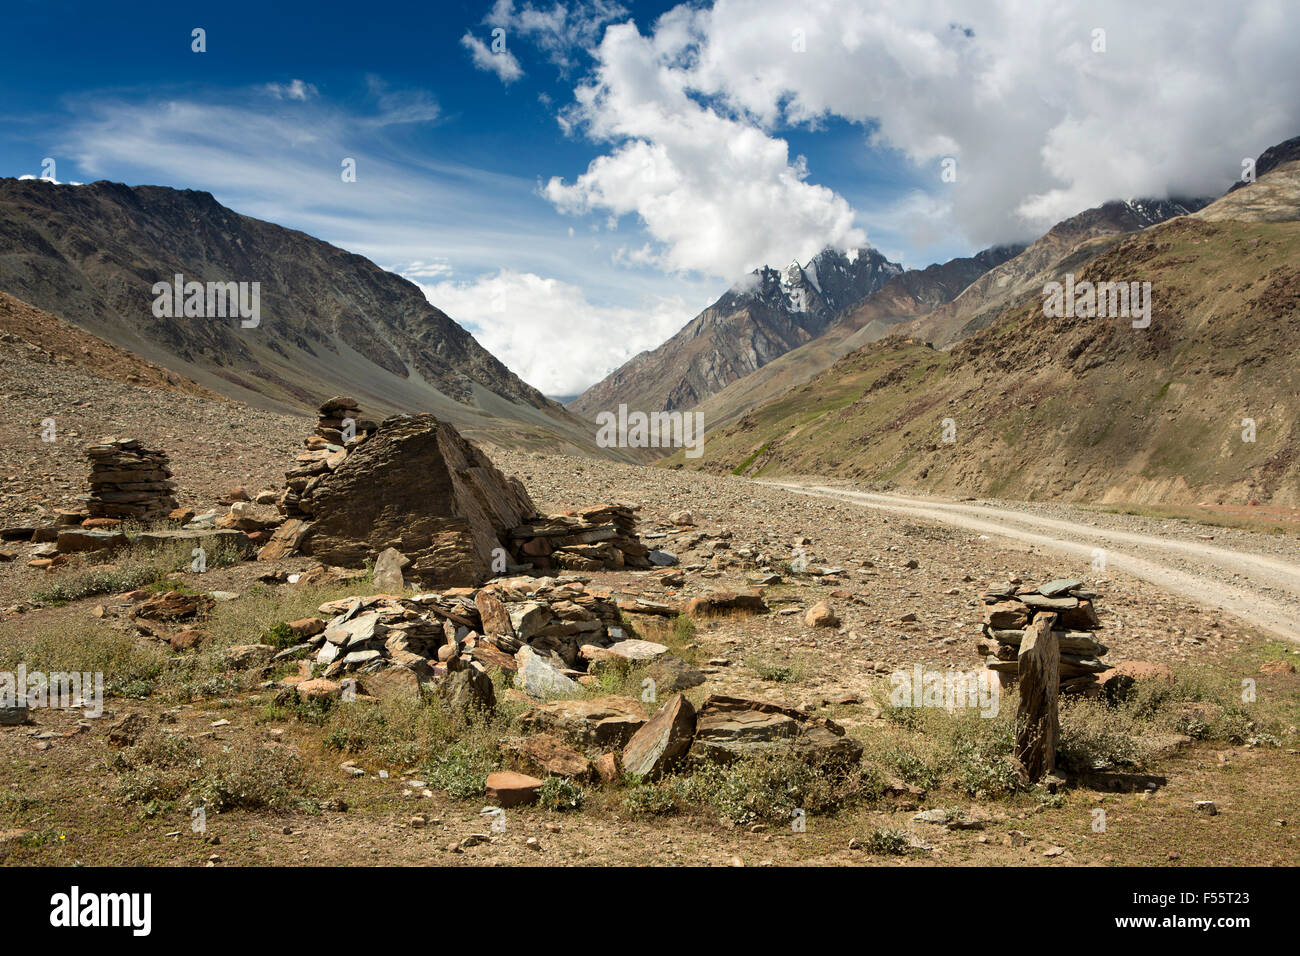 India, Himachal Pradesh, Spiti, Chandra, Taal pietra abbandonati capanna di pastore accanto alla strada sconnessa a Kunzum La pass Foto Stock